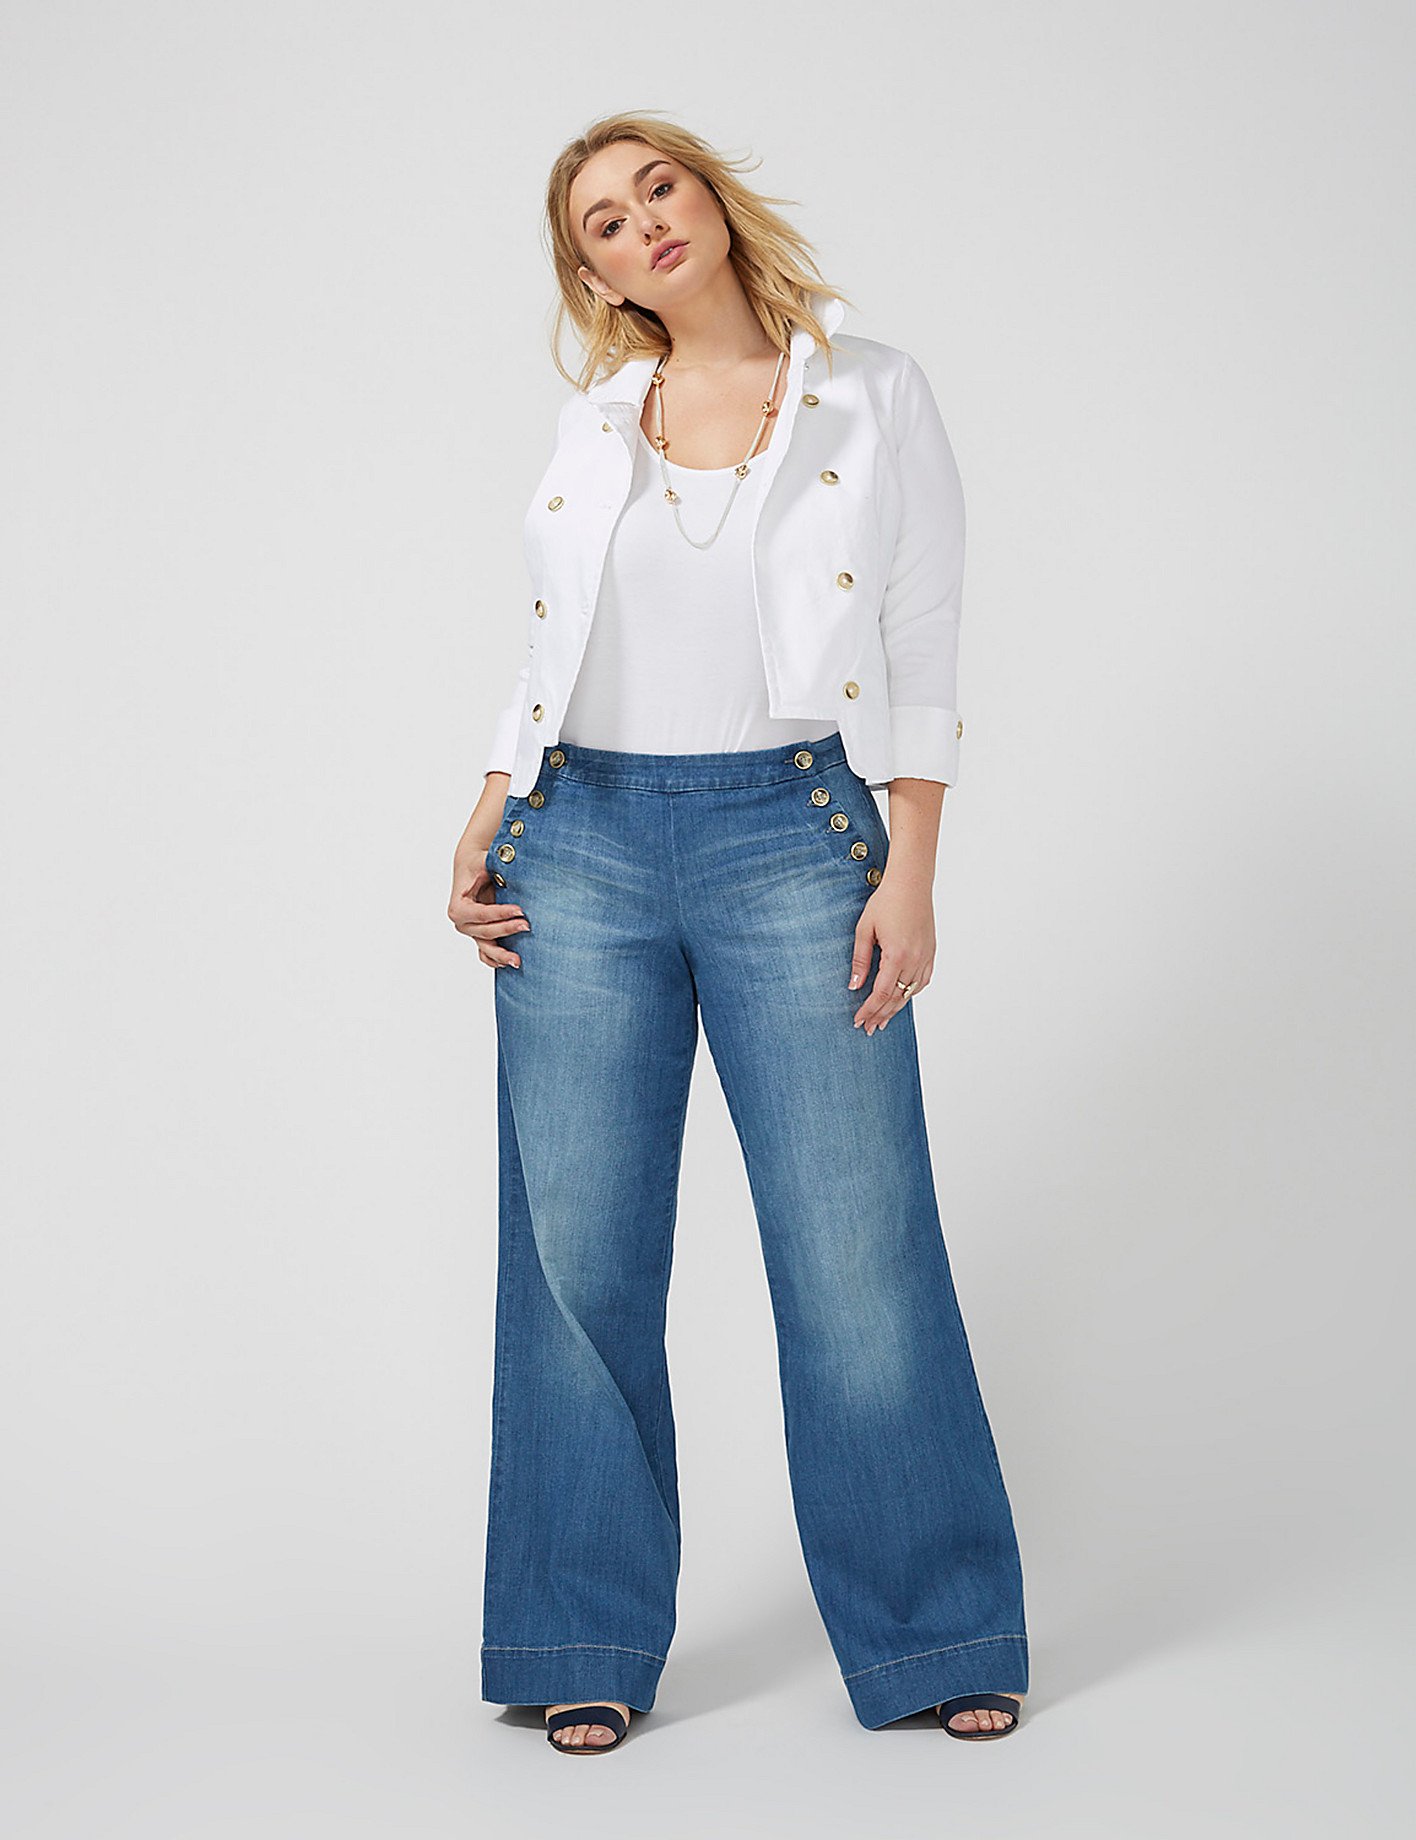 Модели джинсов женских для полных женщин